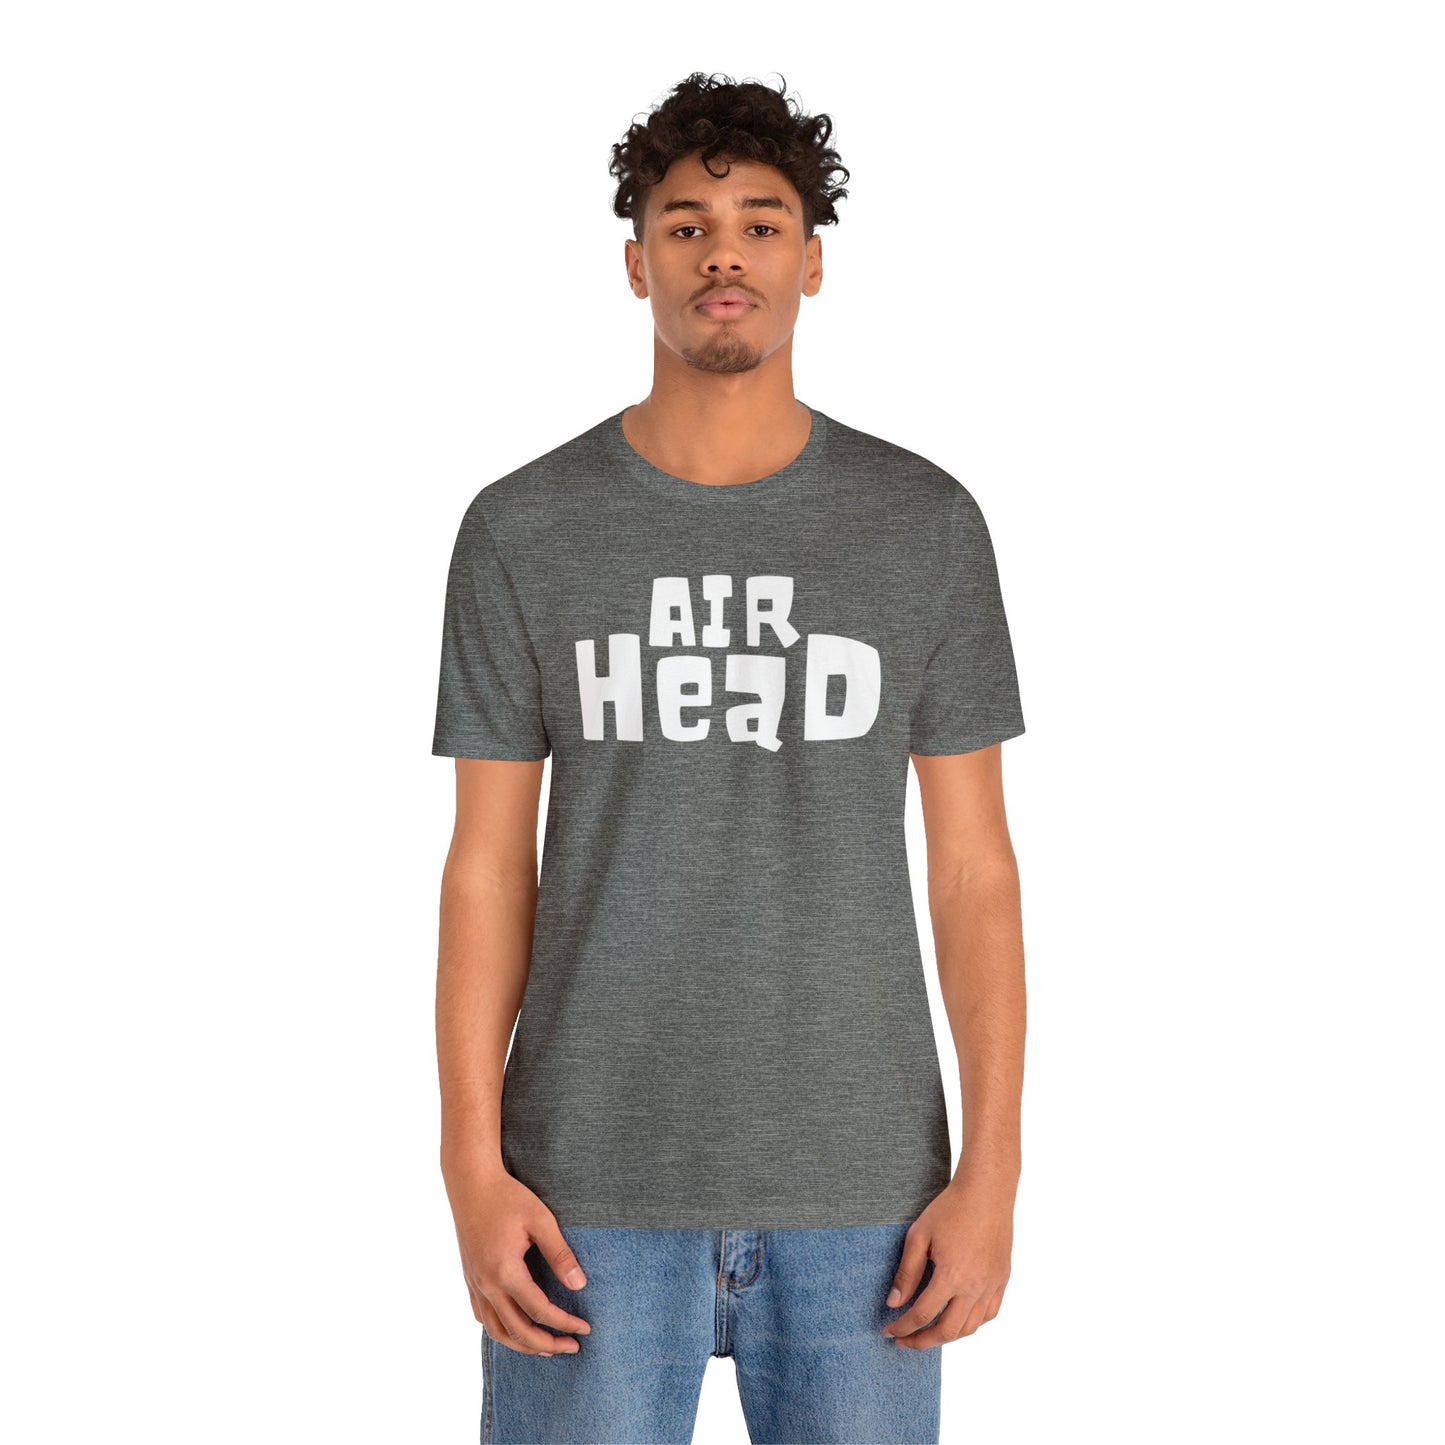 Super Dope Threads - Air Head